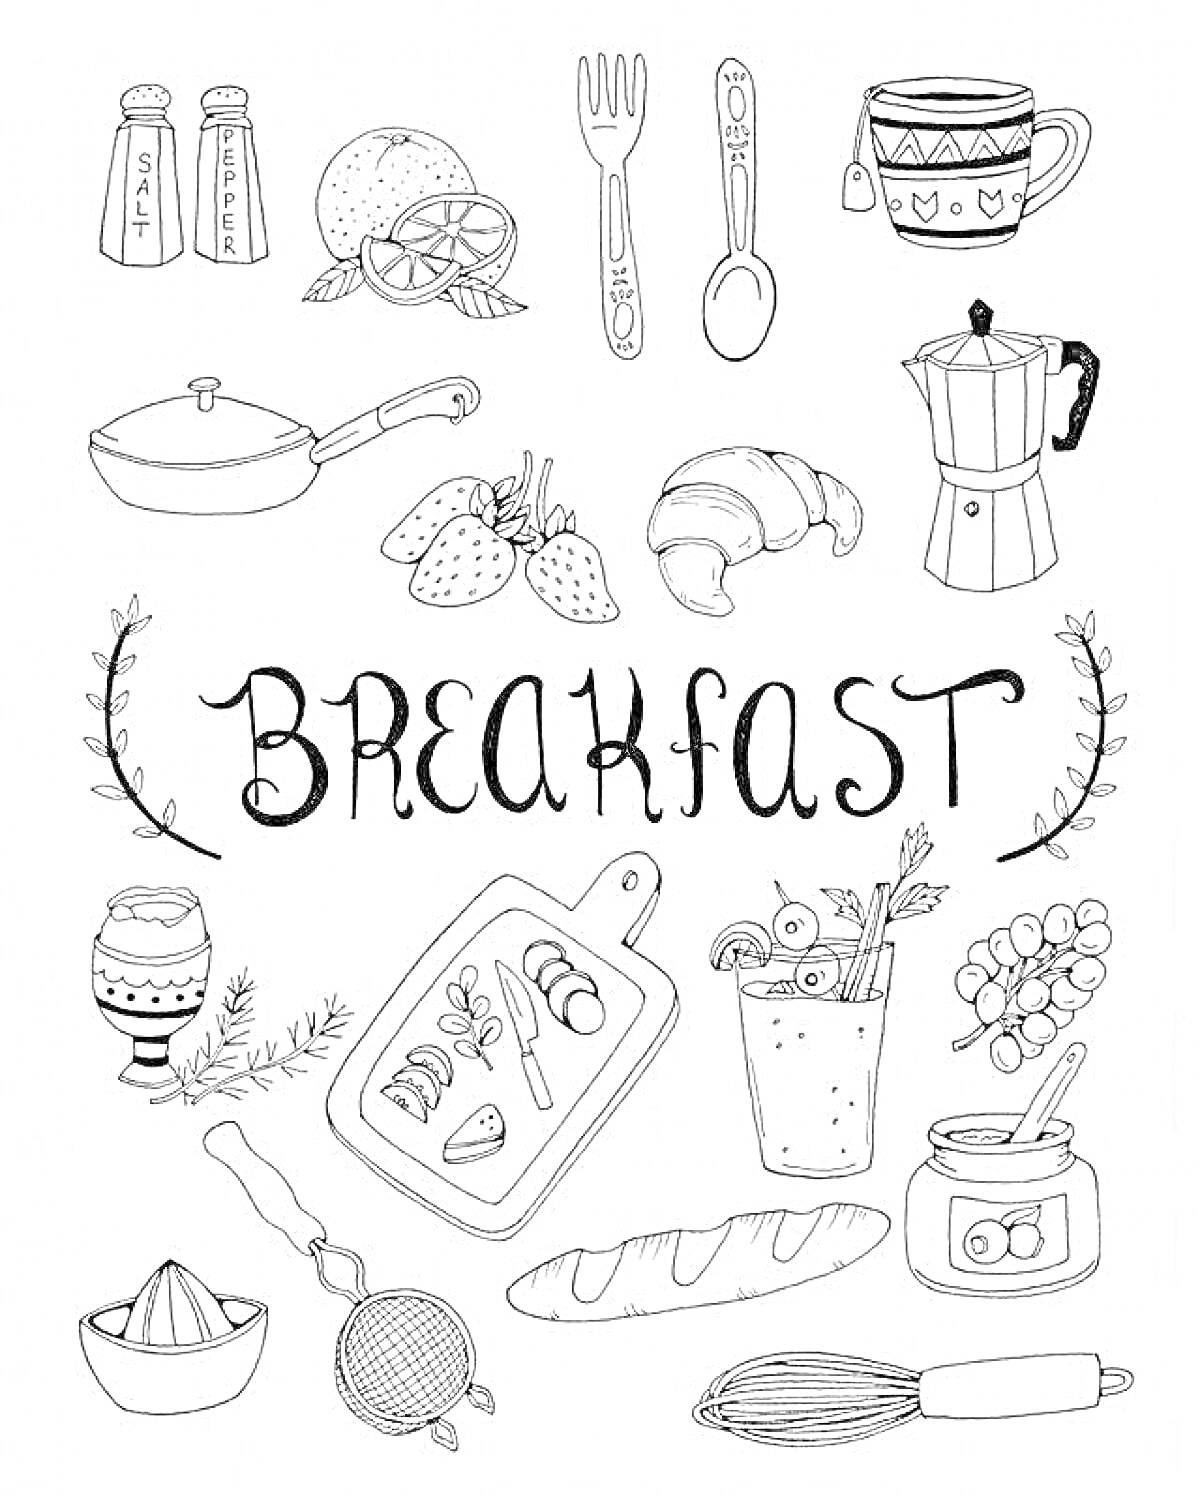 Раскраска Завтрак с кухонными принадлежностями и едой: сковорода, солонка и перечница, половина апельсина, вилка, ложка, чашка с рисунком, гейзерная кофеварка, круассан, клубника, варёное яйцо в подставке, розмарин, разделочная доска с нарезанными фруктами и колбас